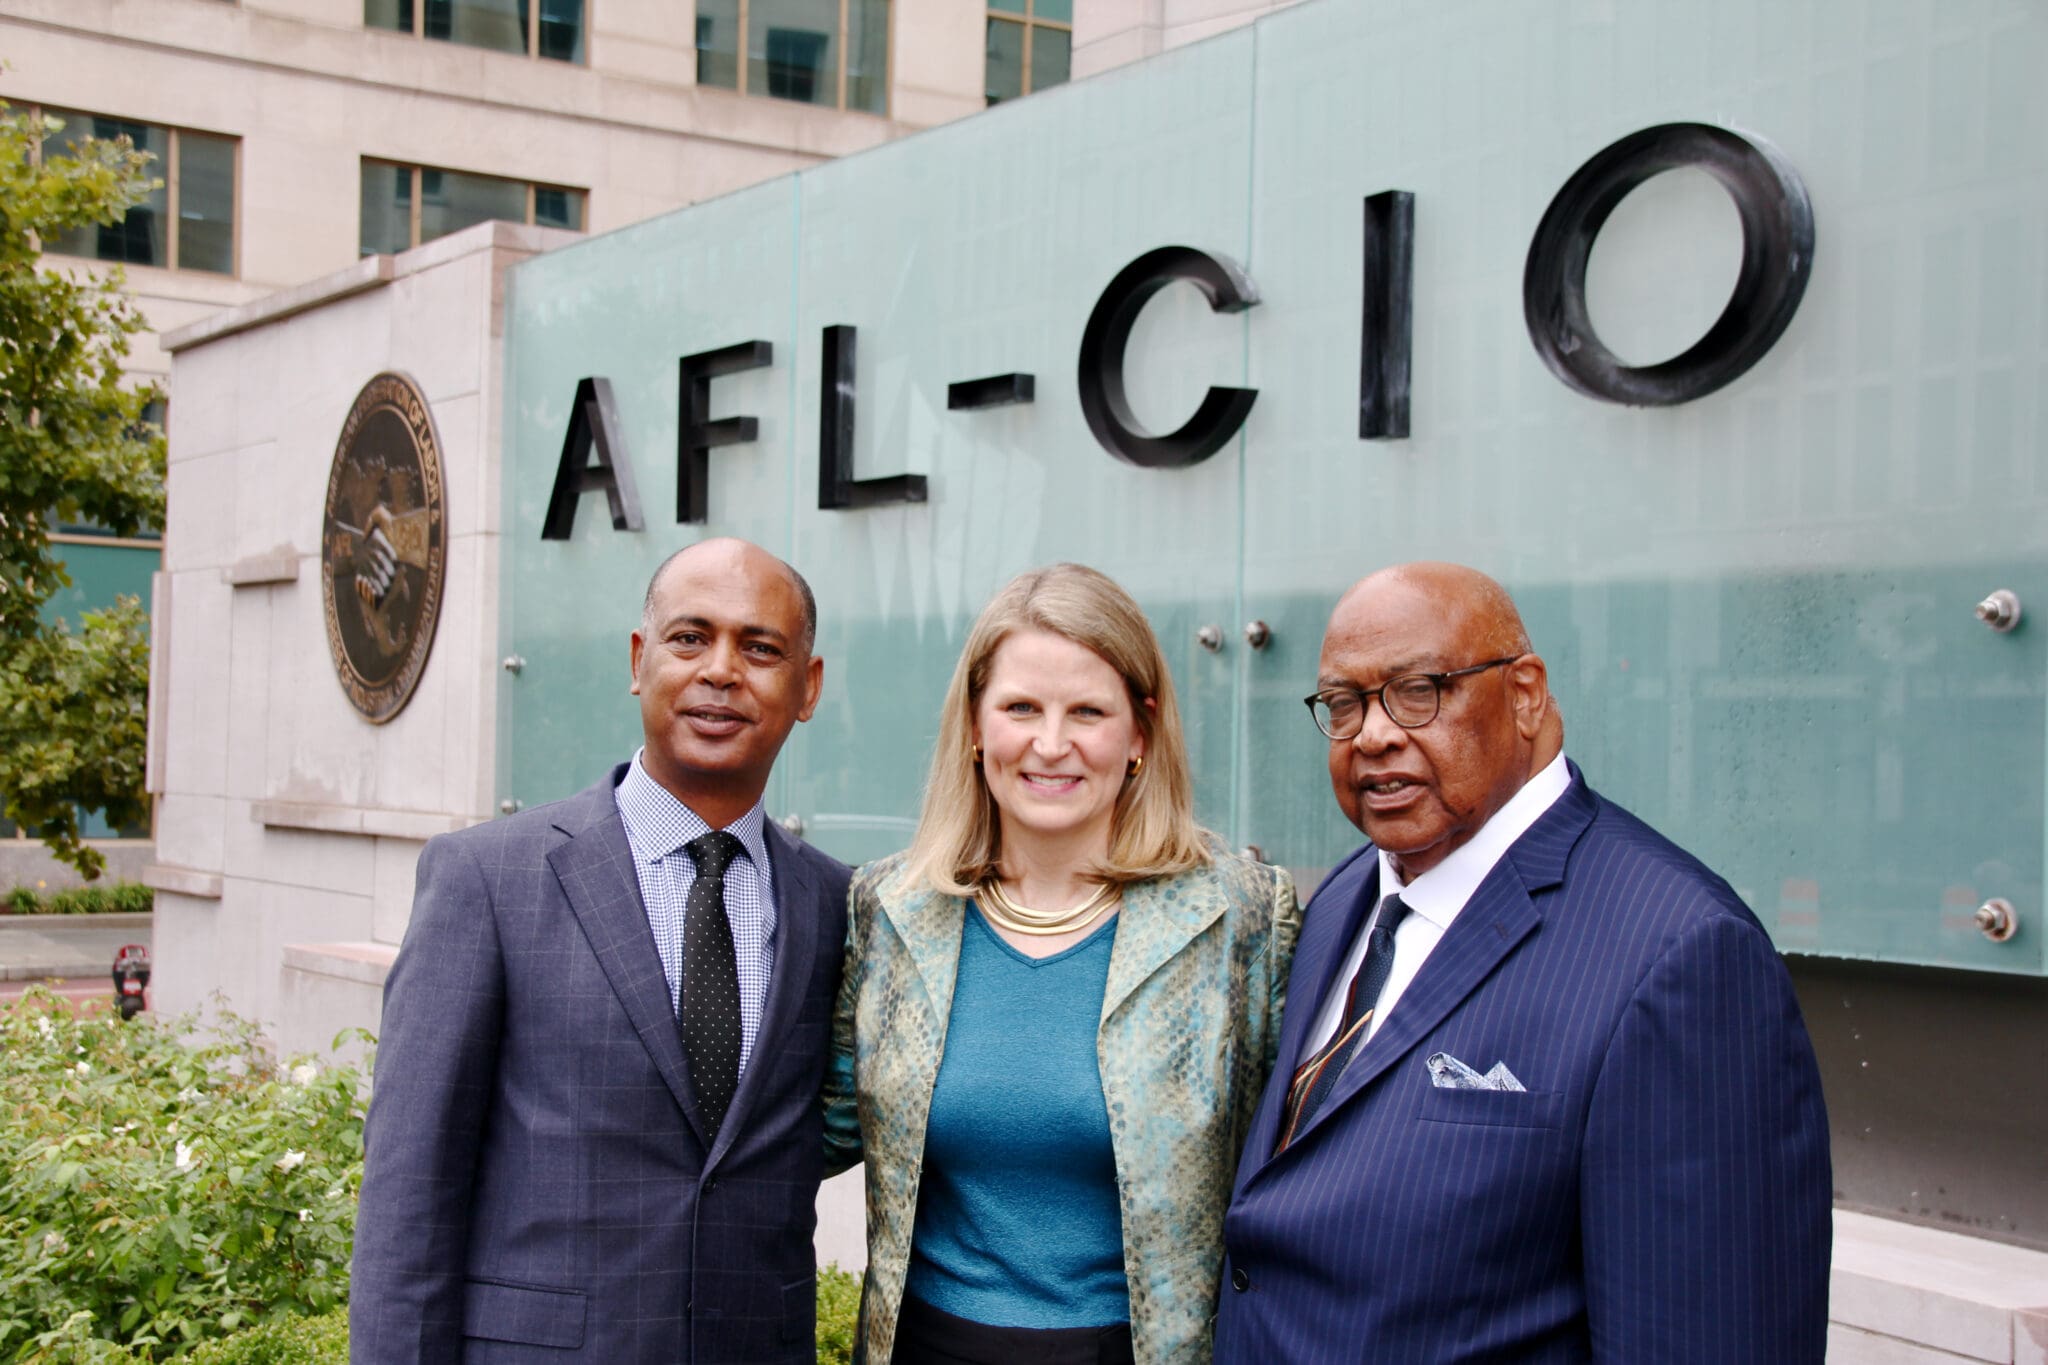 New AFL-CIO leadership team